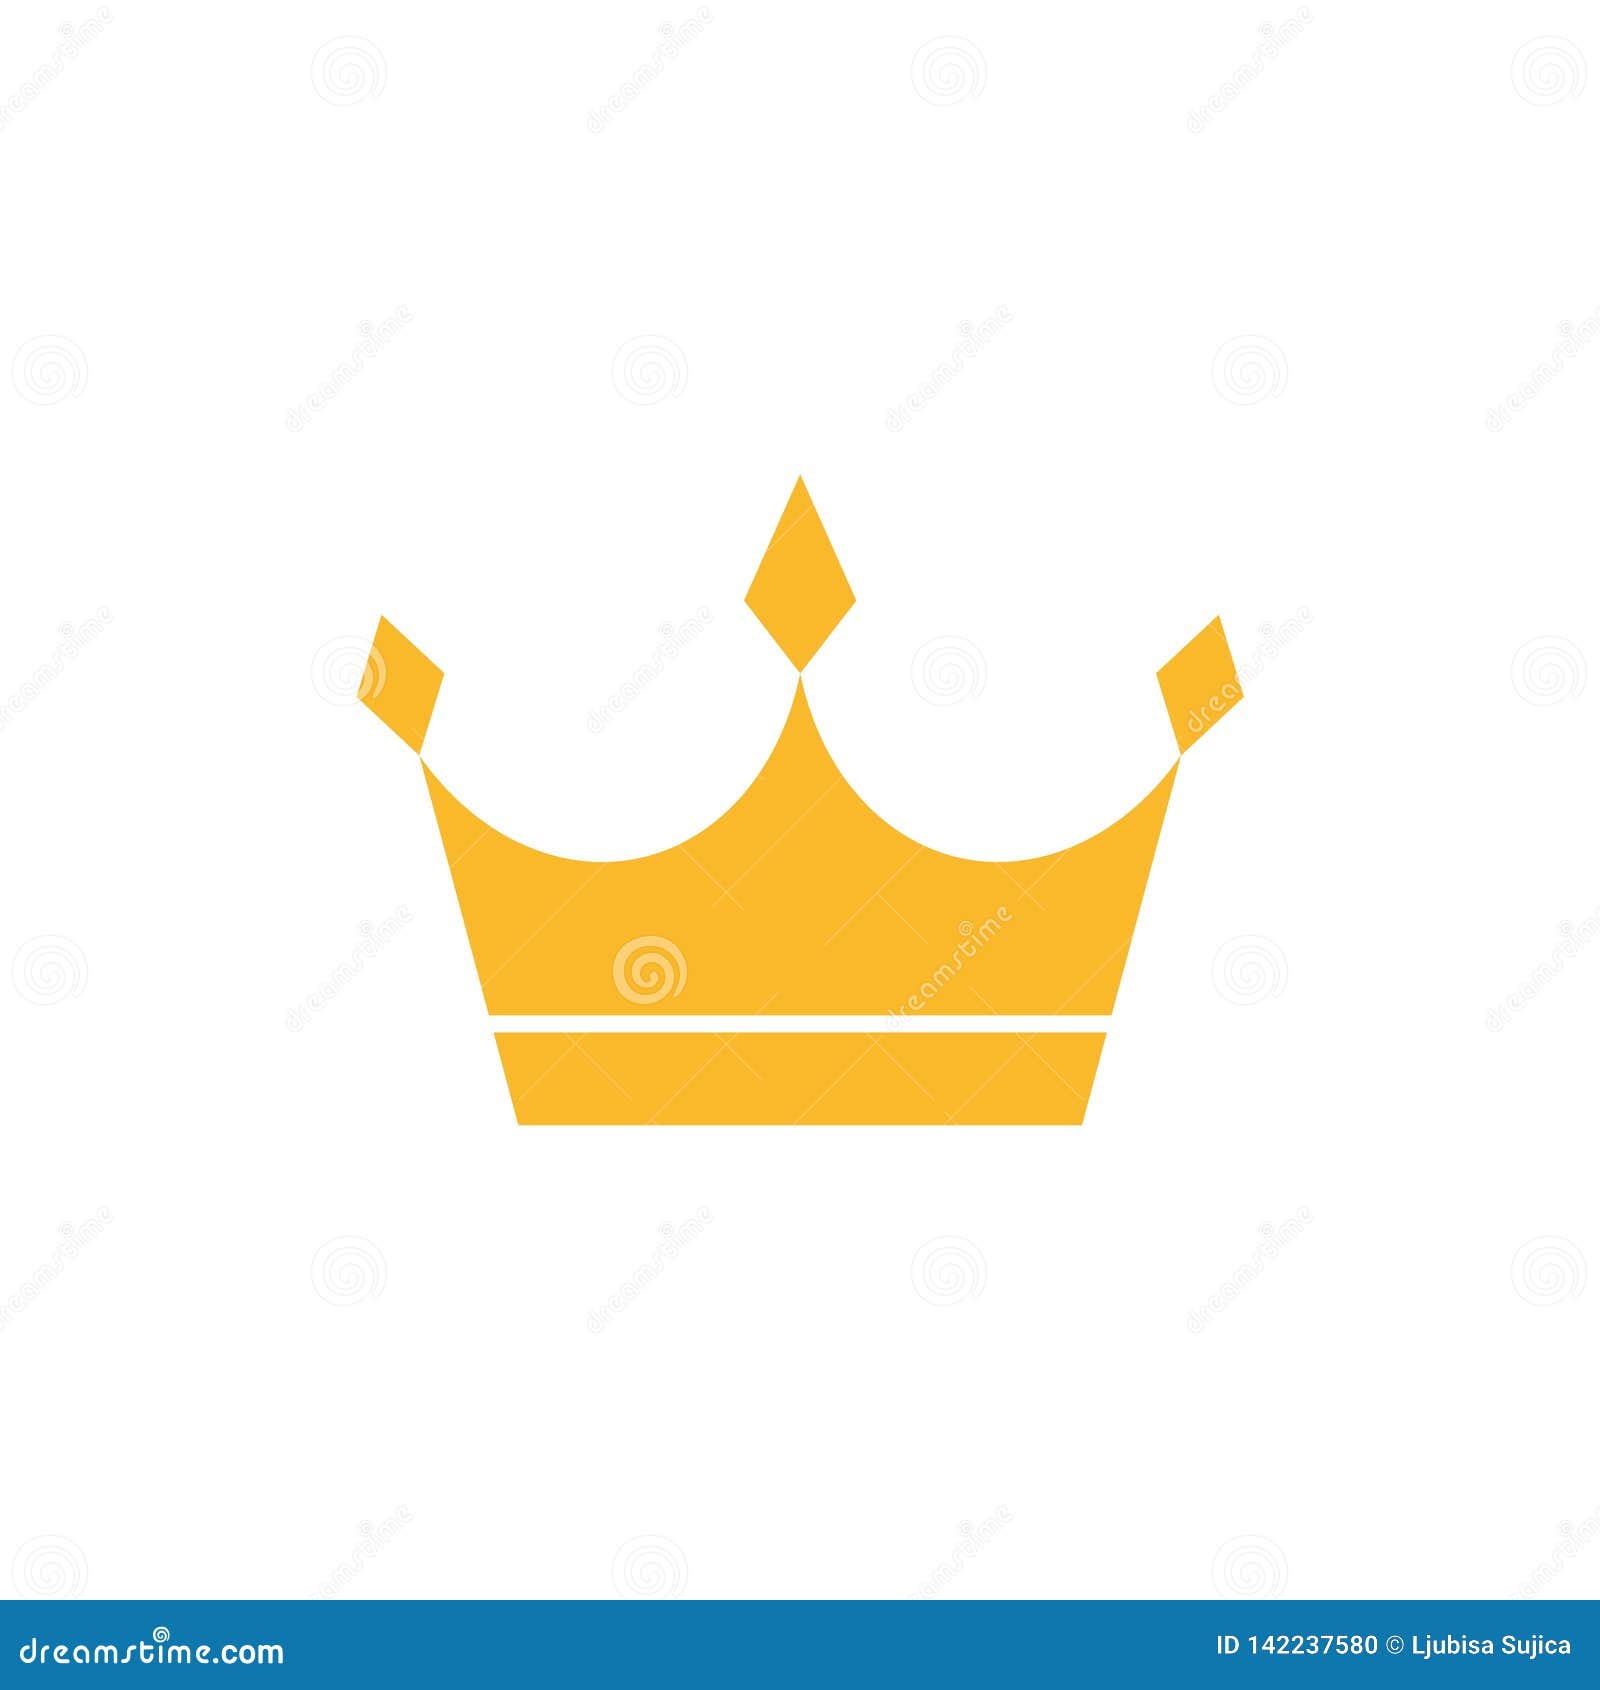 Logo vương miện được thiết kế vô cùng đẳng cấp và sang trọng, bao gồm nét cắt bén, tinh tế và sáng tạo. Hãy xem ảnh liên quan để cảm nhận được sự hoàn hảo của thiết kế này.